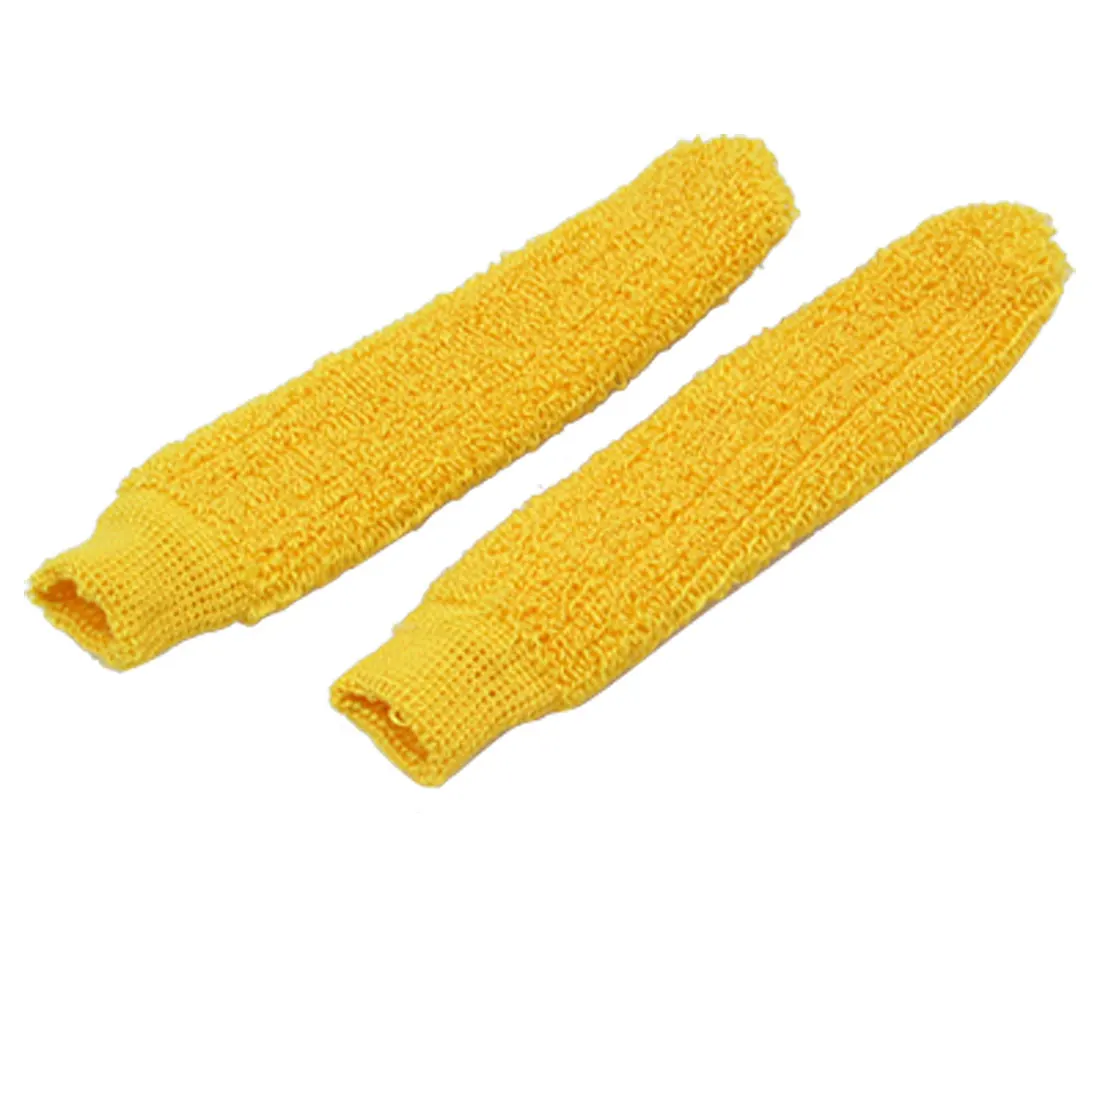 Хорошая сделка 2 шт. ракетка для бадминтона эластичное полотенце над захватом крышка желтый